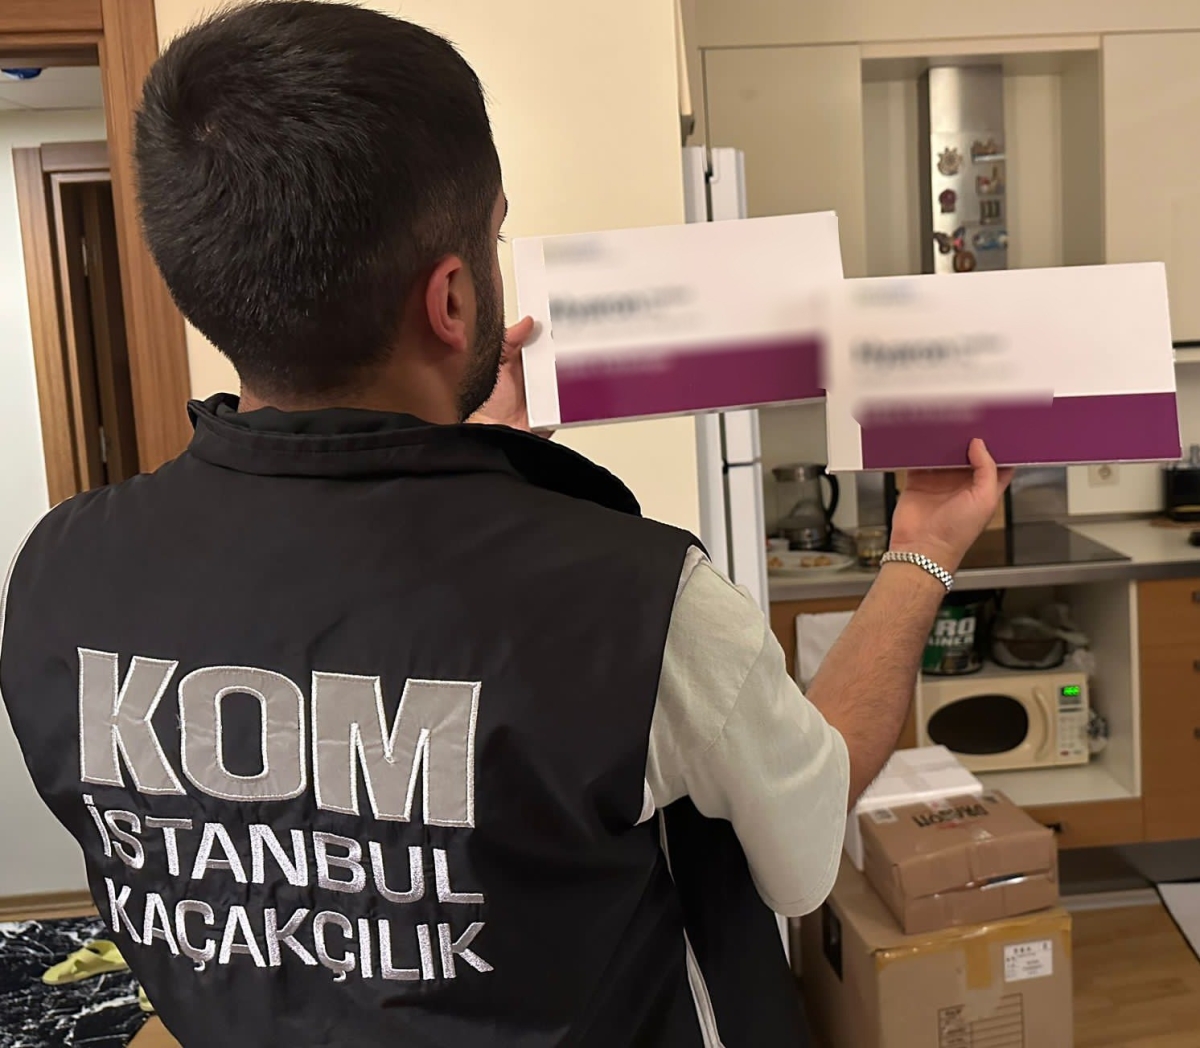 İstanbul’da kaçak botoks ilacı satan 2 şüpheli yakalandı
